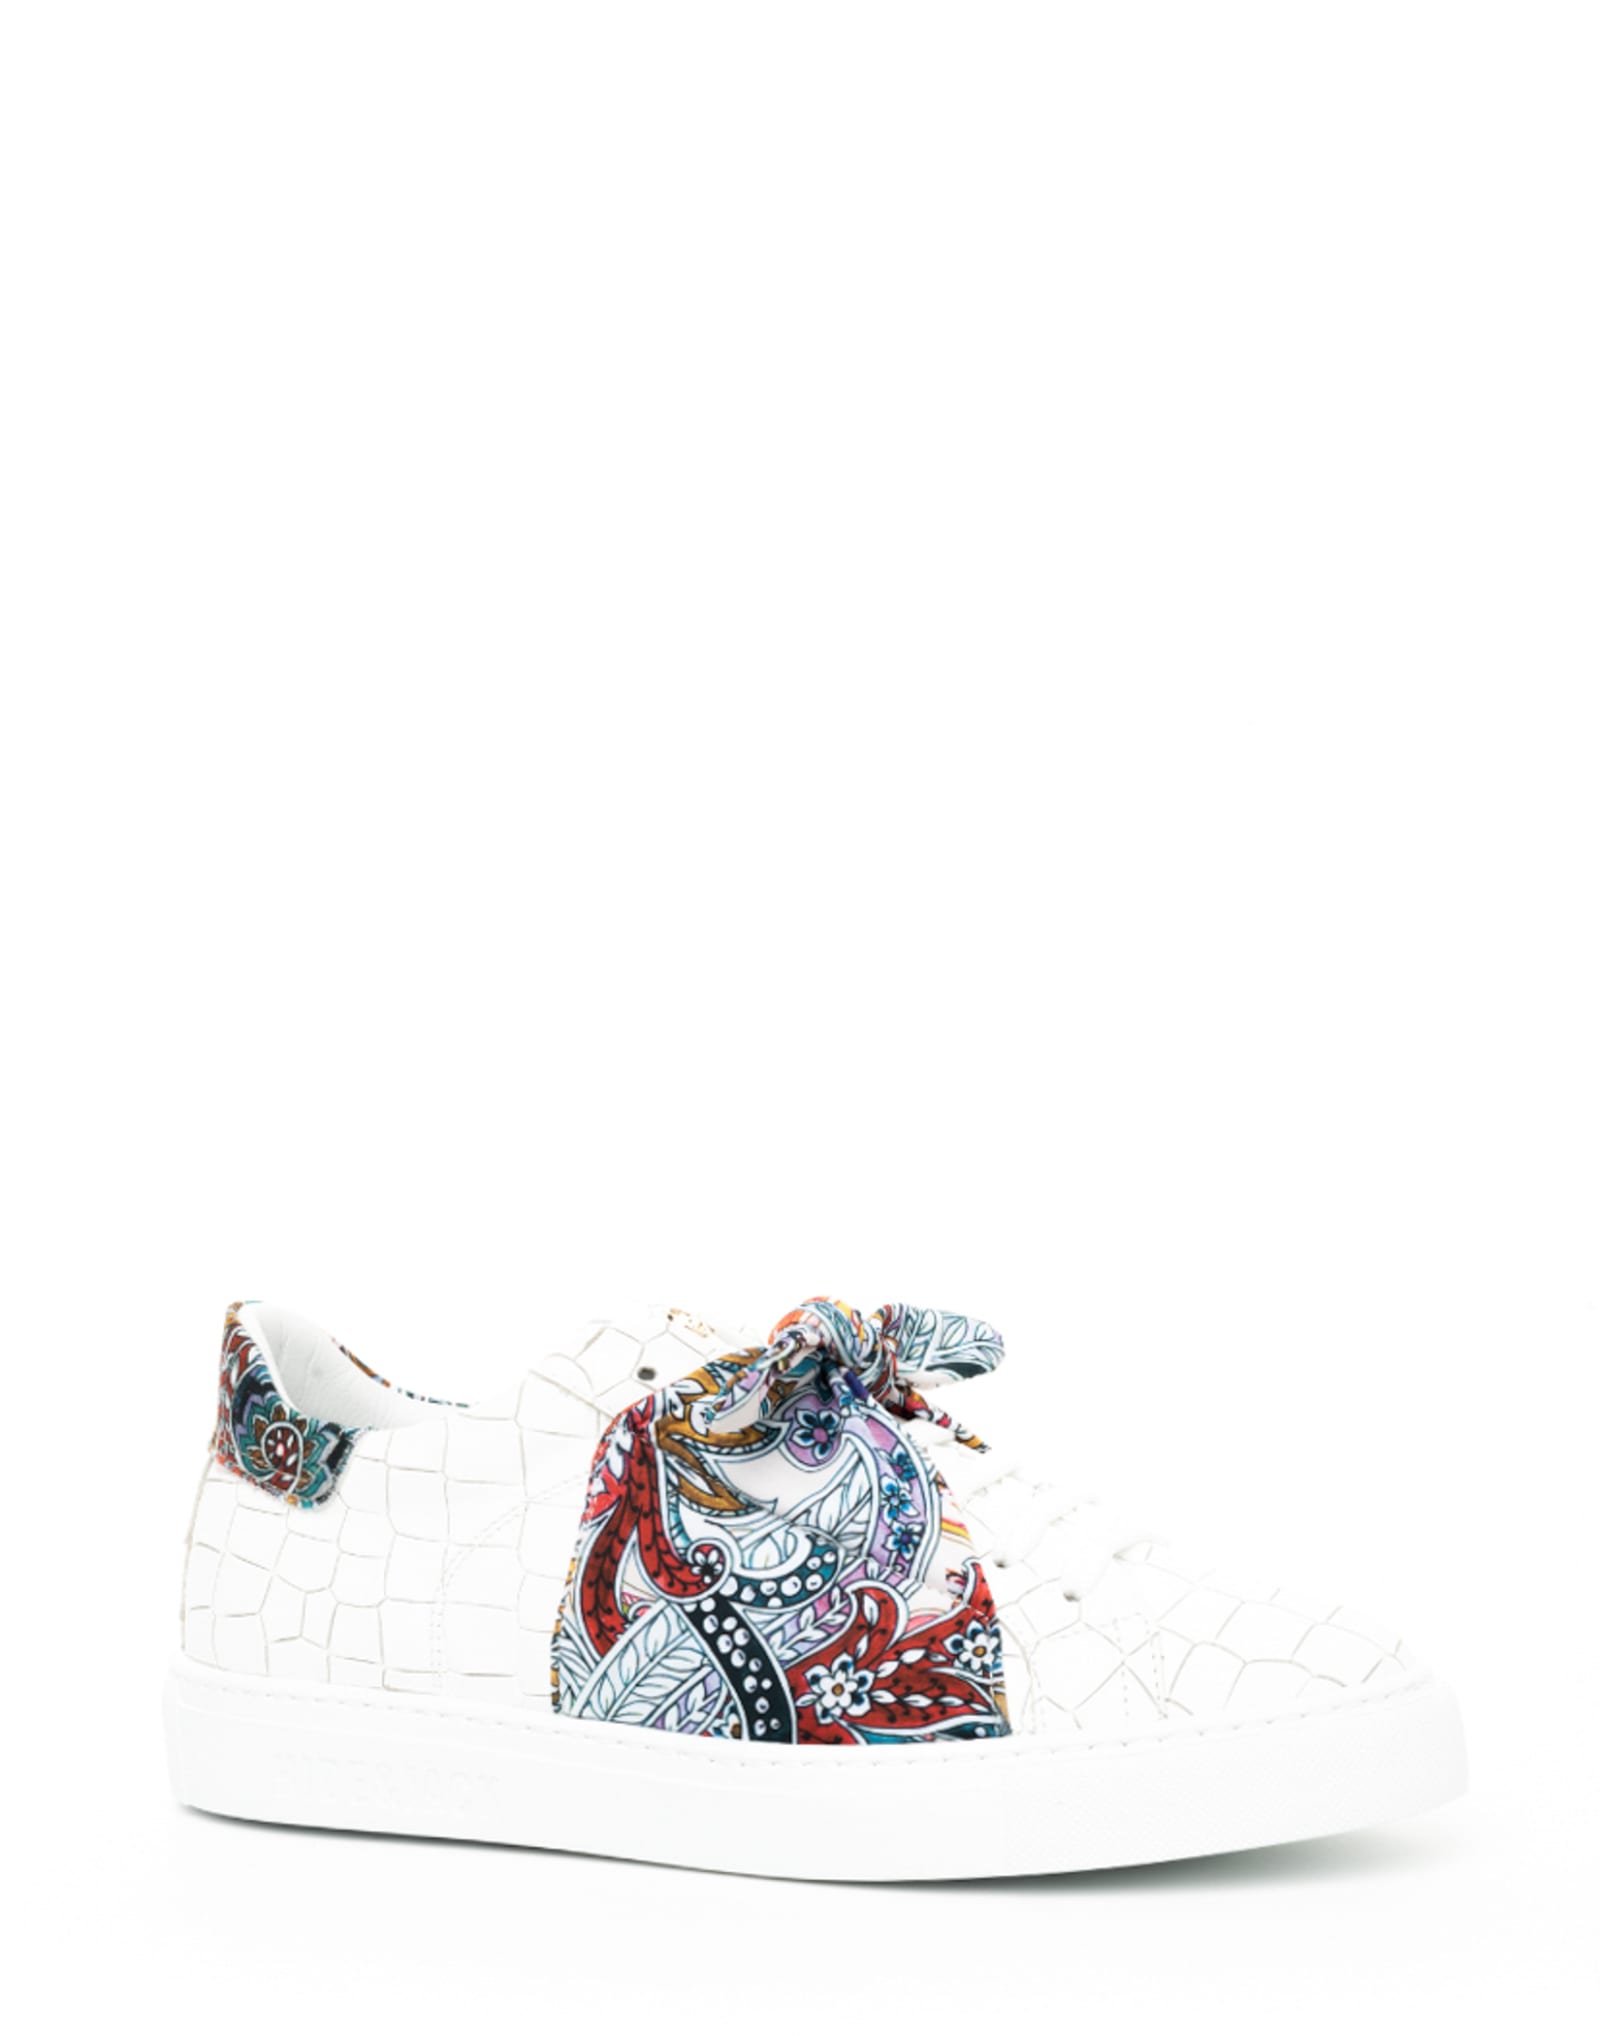 Hide & Jack Low Top Sneaker Essence Foulard